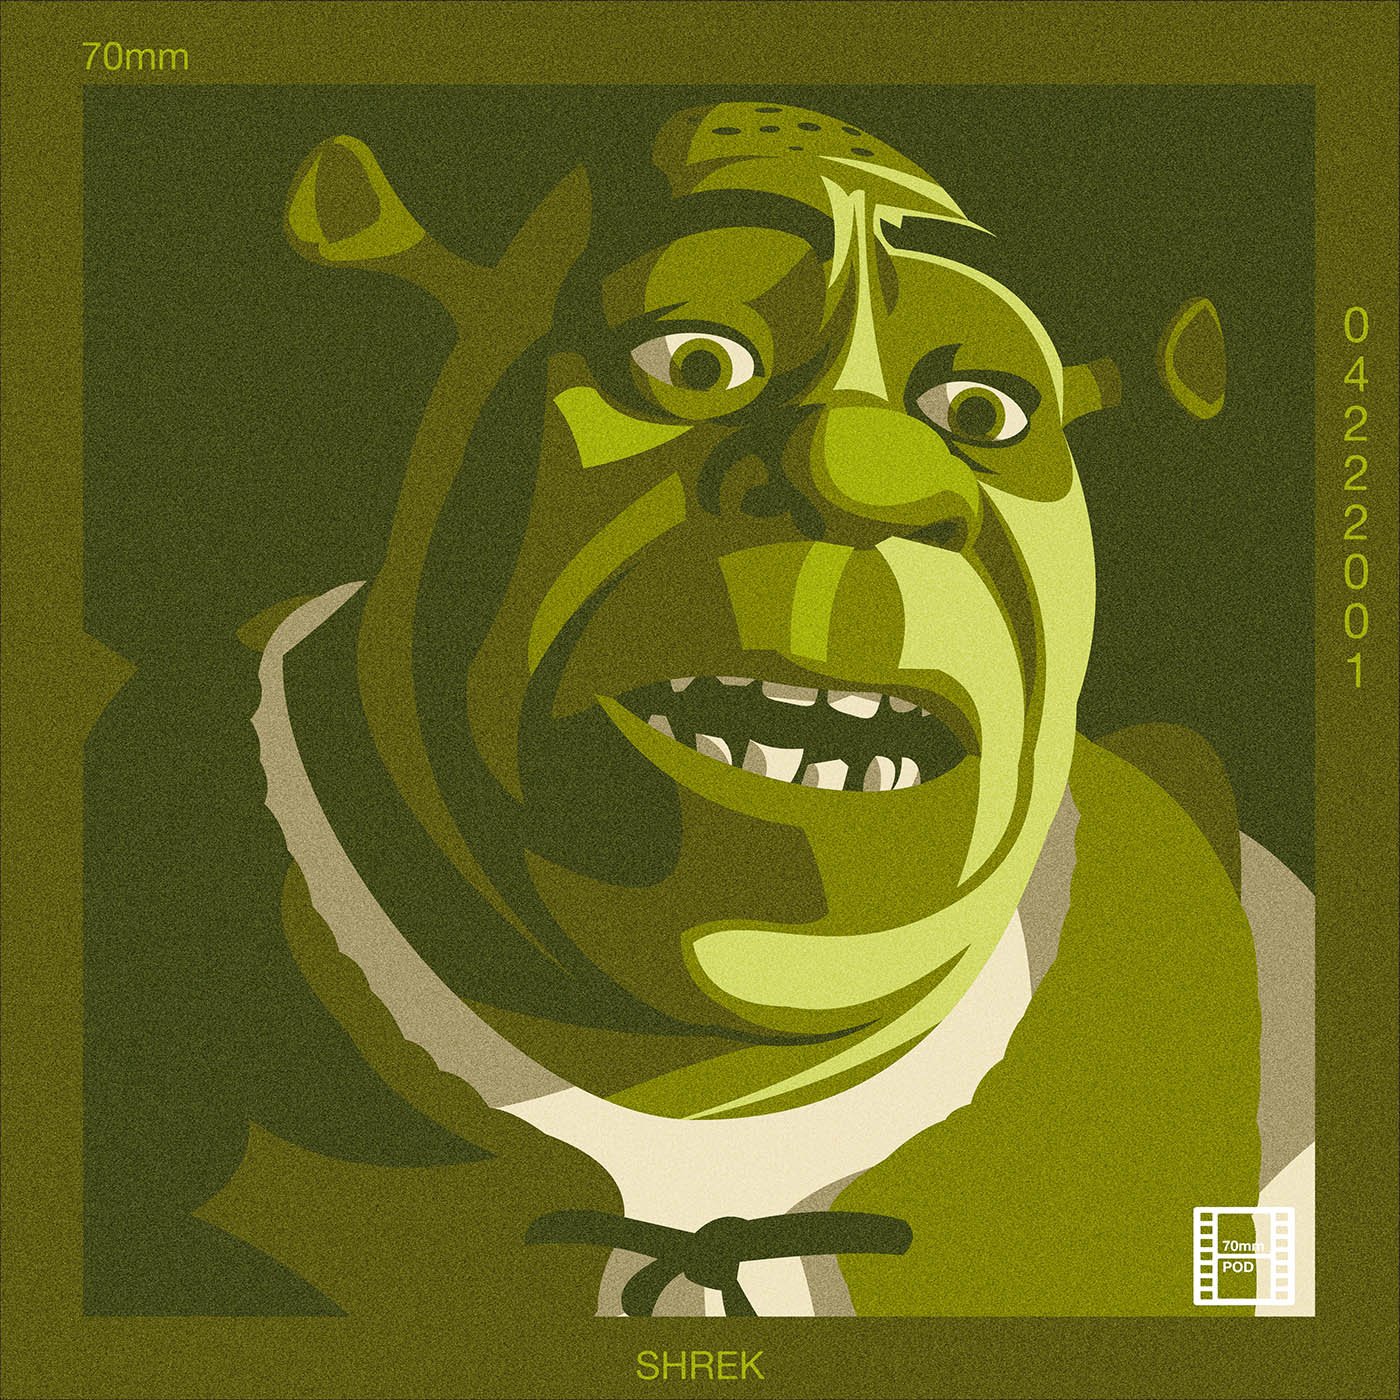 BONUS Episode: Shrek